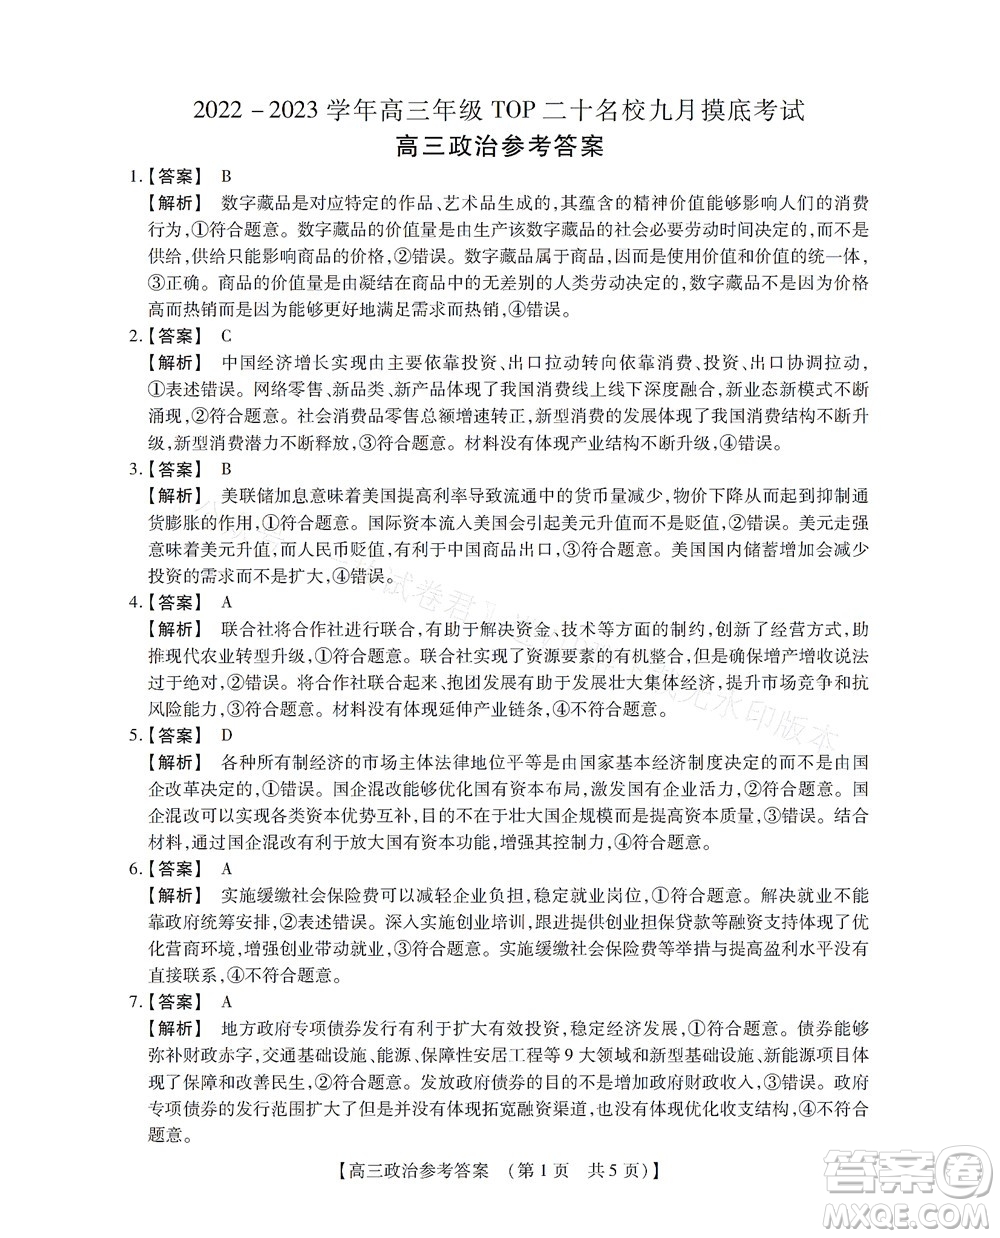 河南省六市2022-2023学年高三年级TOP二十名校九月摸底考试高三政治试卷及答案